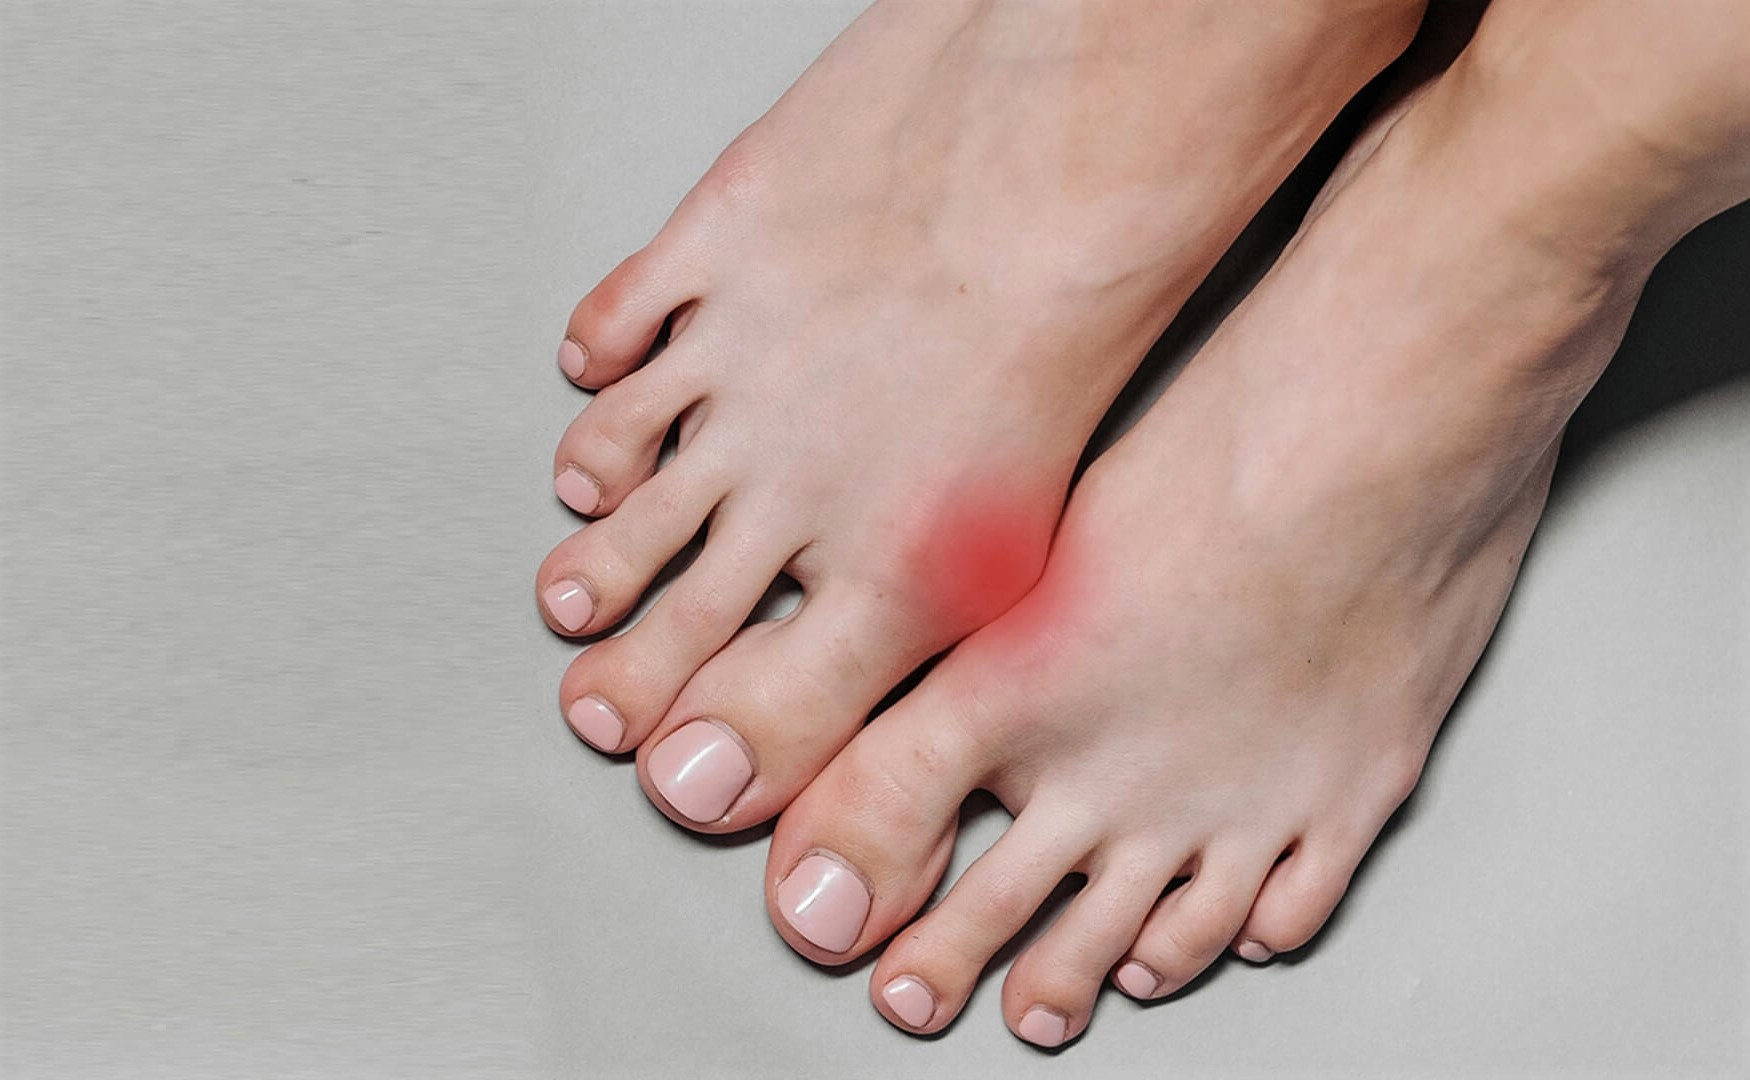 بترین راه درمان انحراف انگشت شست پا در خانه